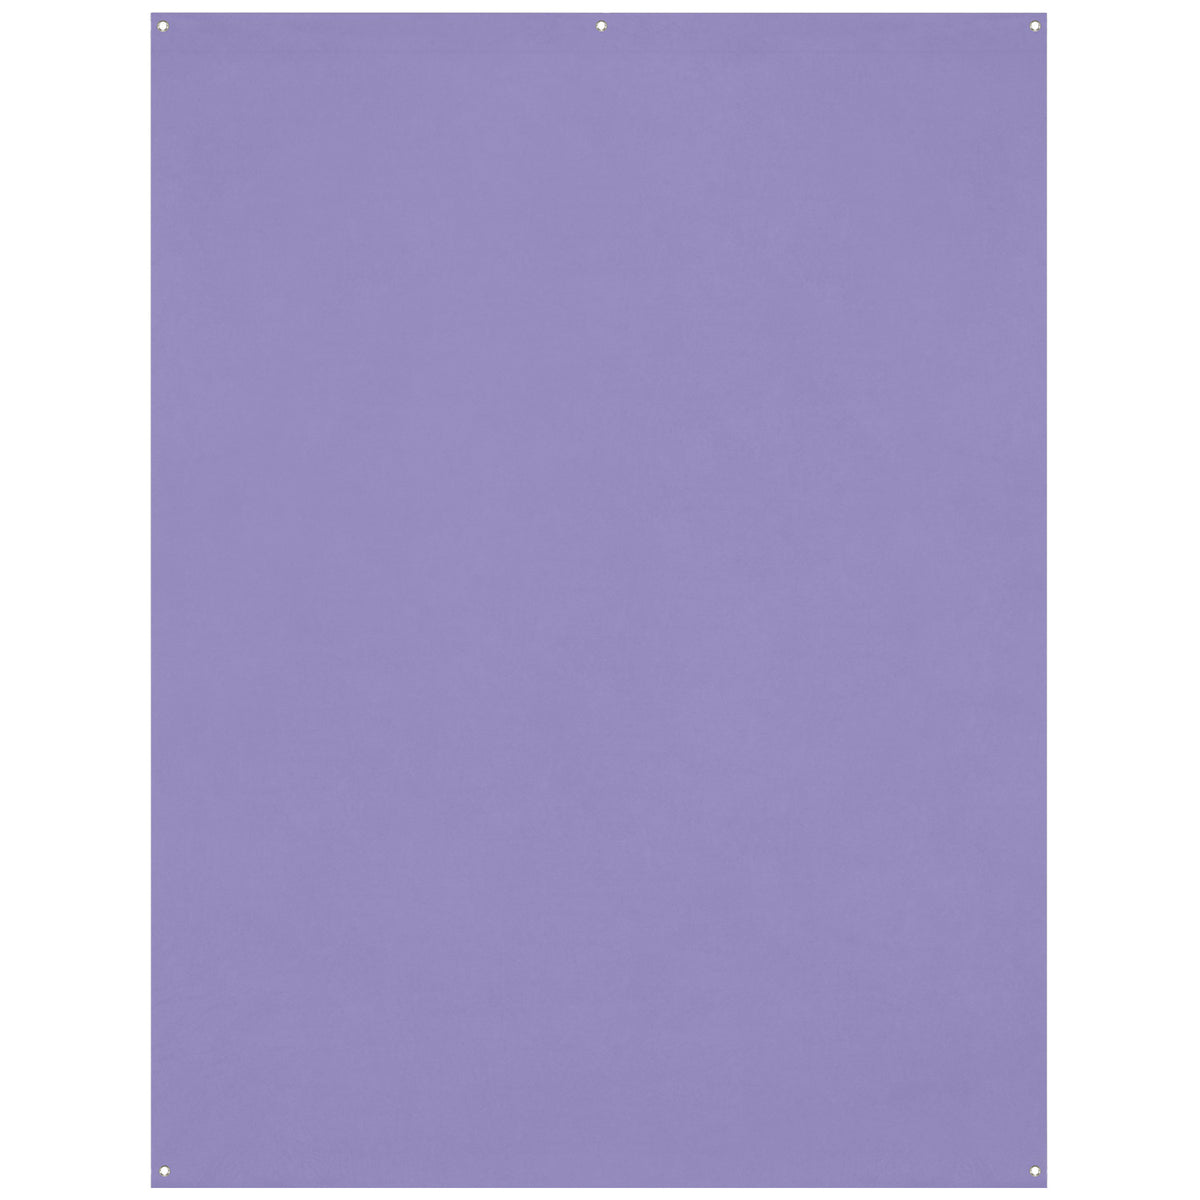 X-Drop Wrinkle-Resistant Backdrop - Periwinkle Purple (5' x 7')